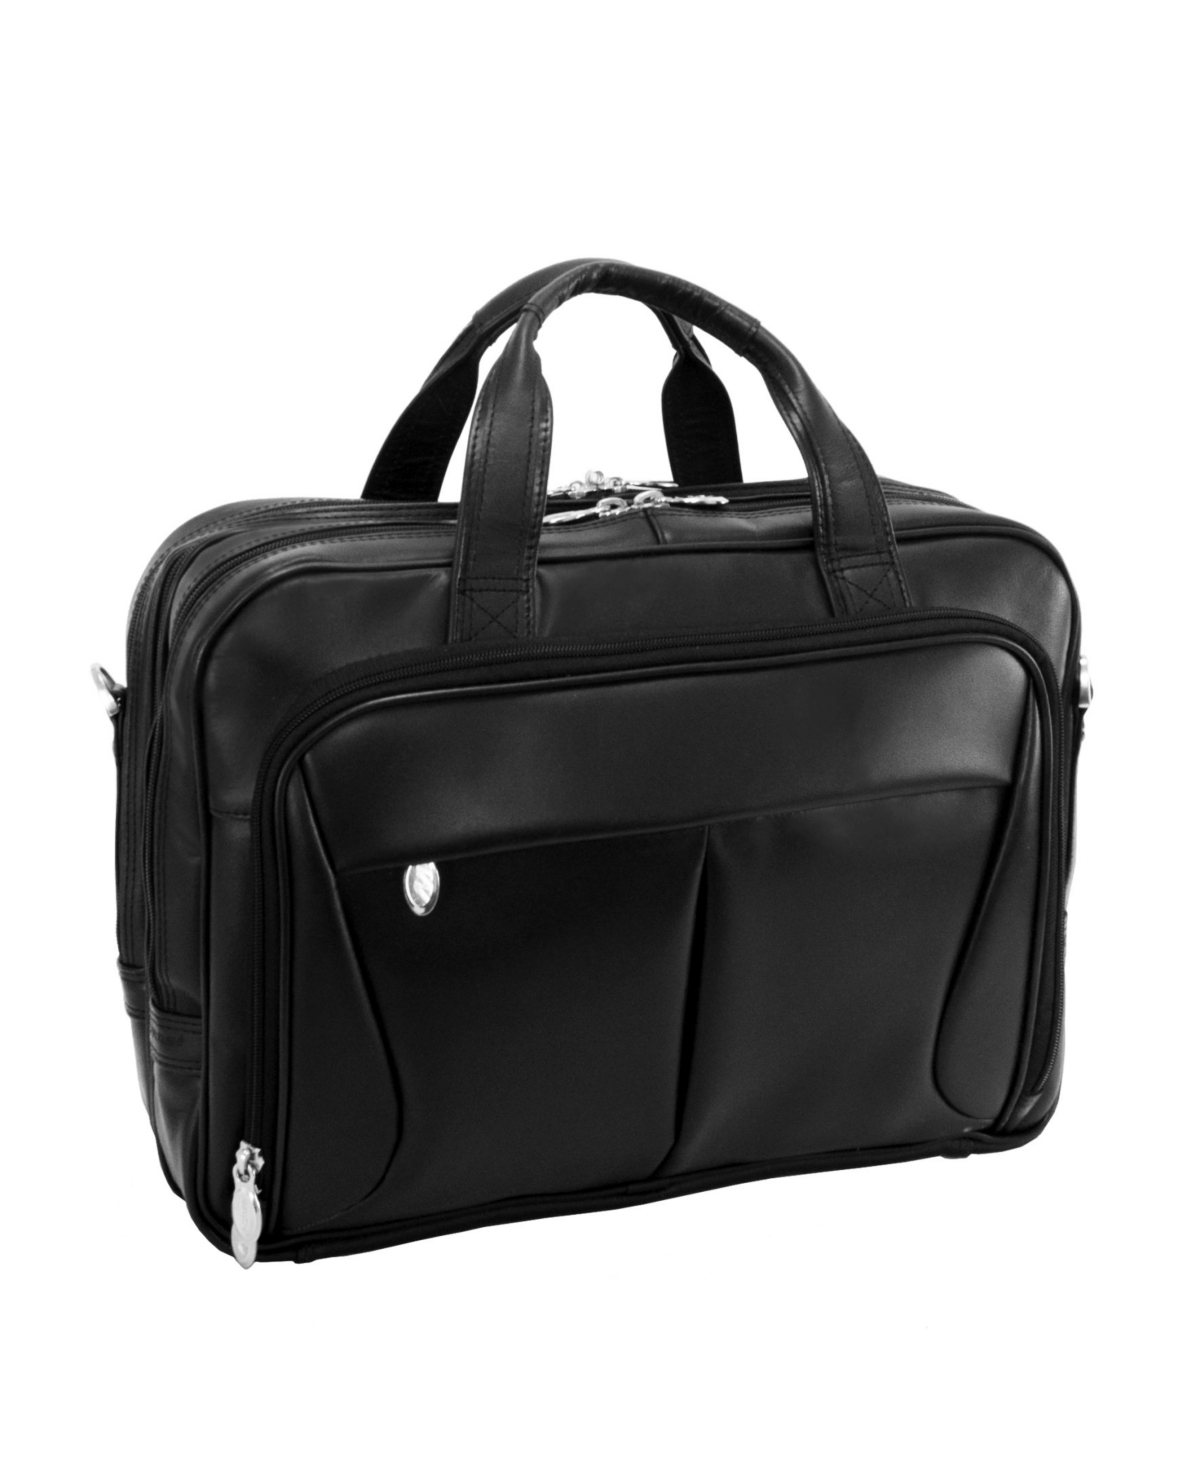 Pearson Expandable Double Compartment Laptop Briefcase - Black